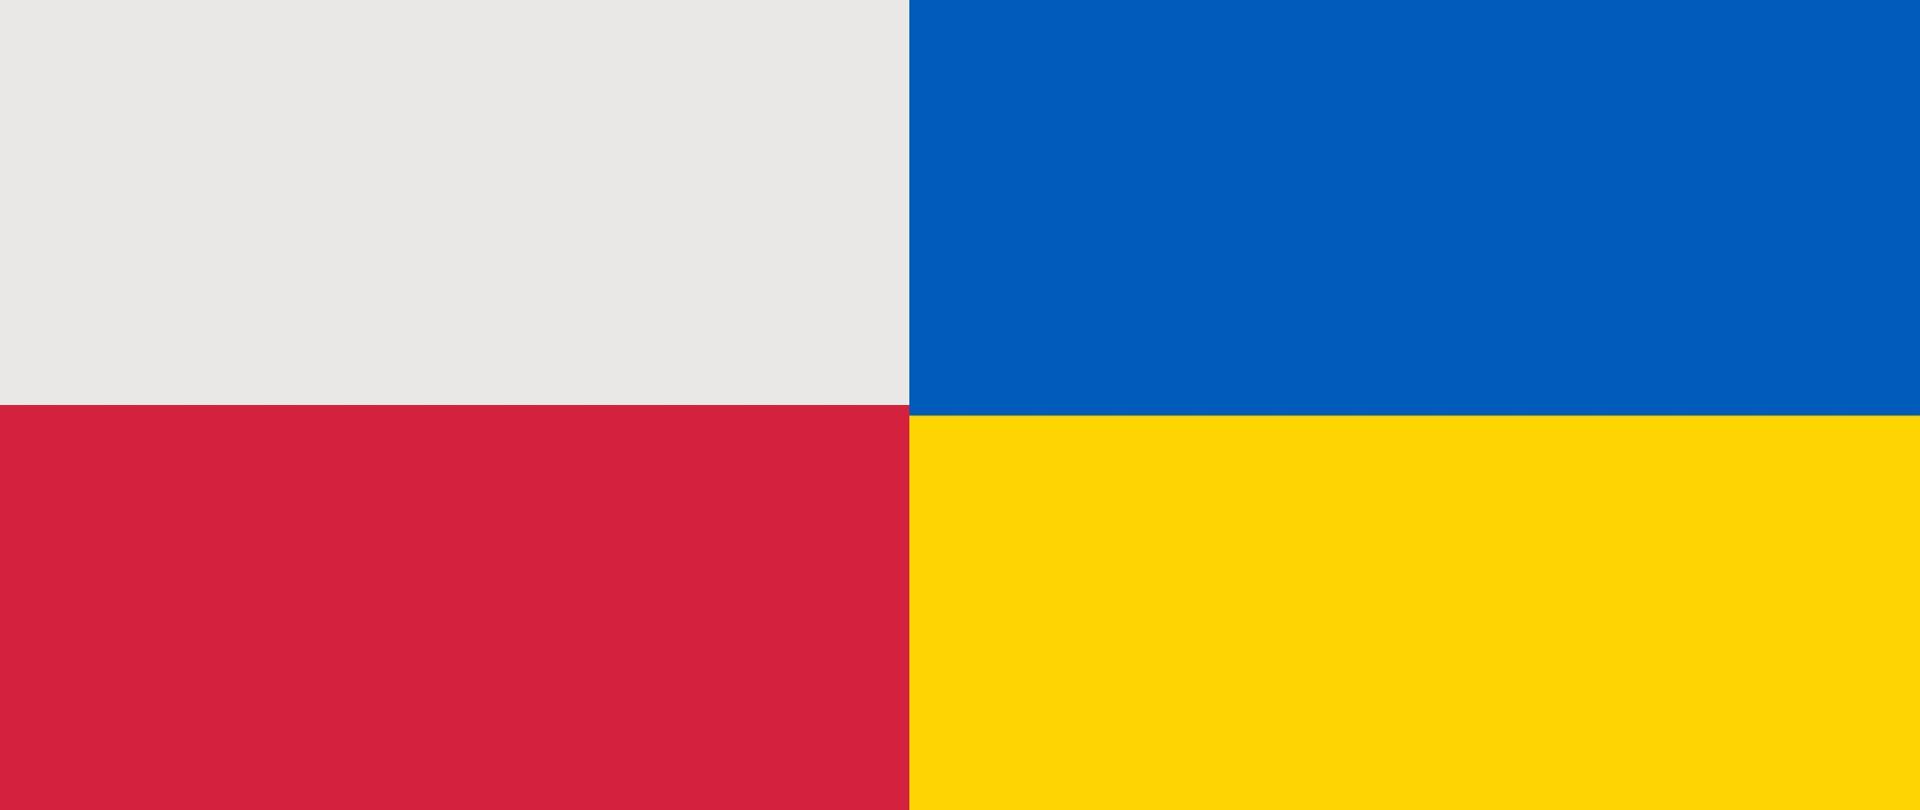 Obraz przedstawia flagi Polski i Ukrainy